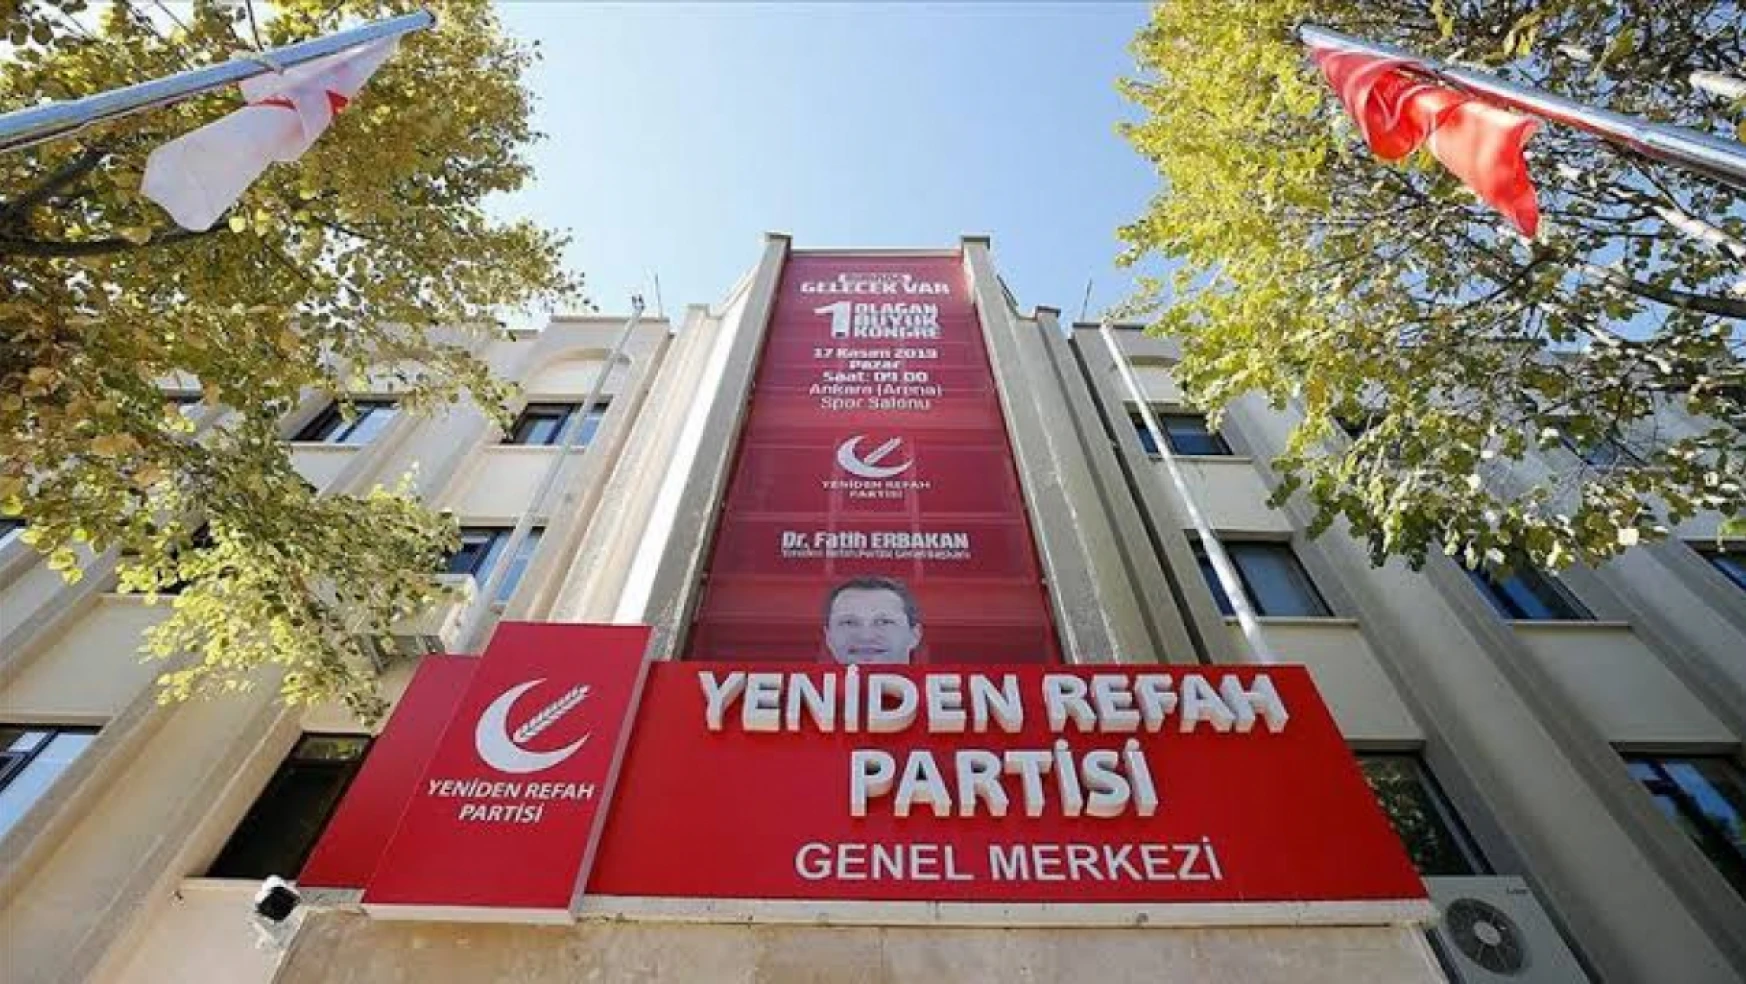 Yeniden Refah Partisi, aday adayları ile 3 Nisan'a kadar mülakat yapacak